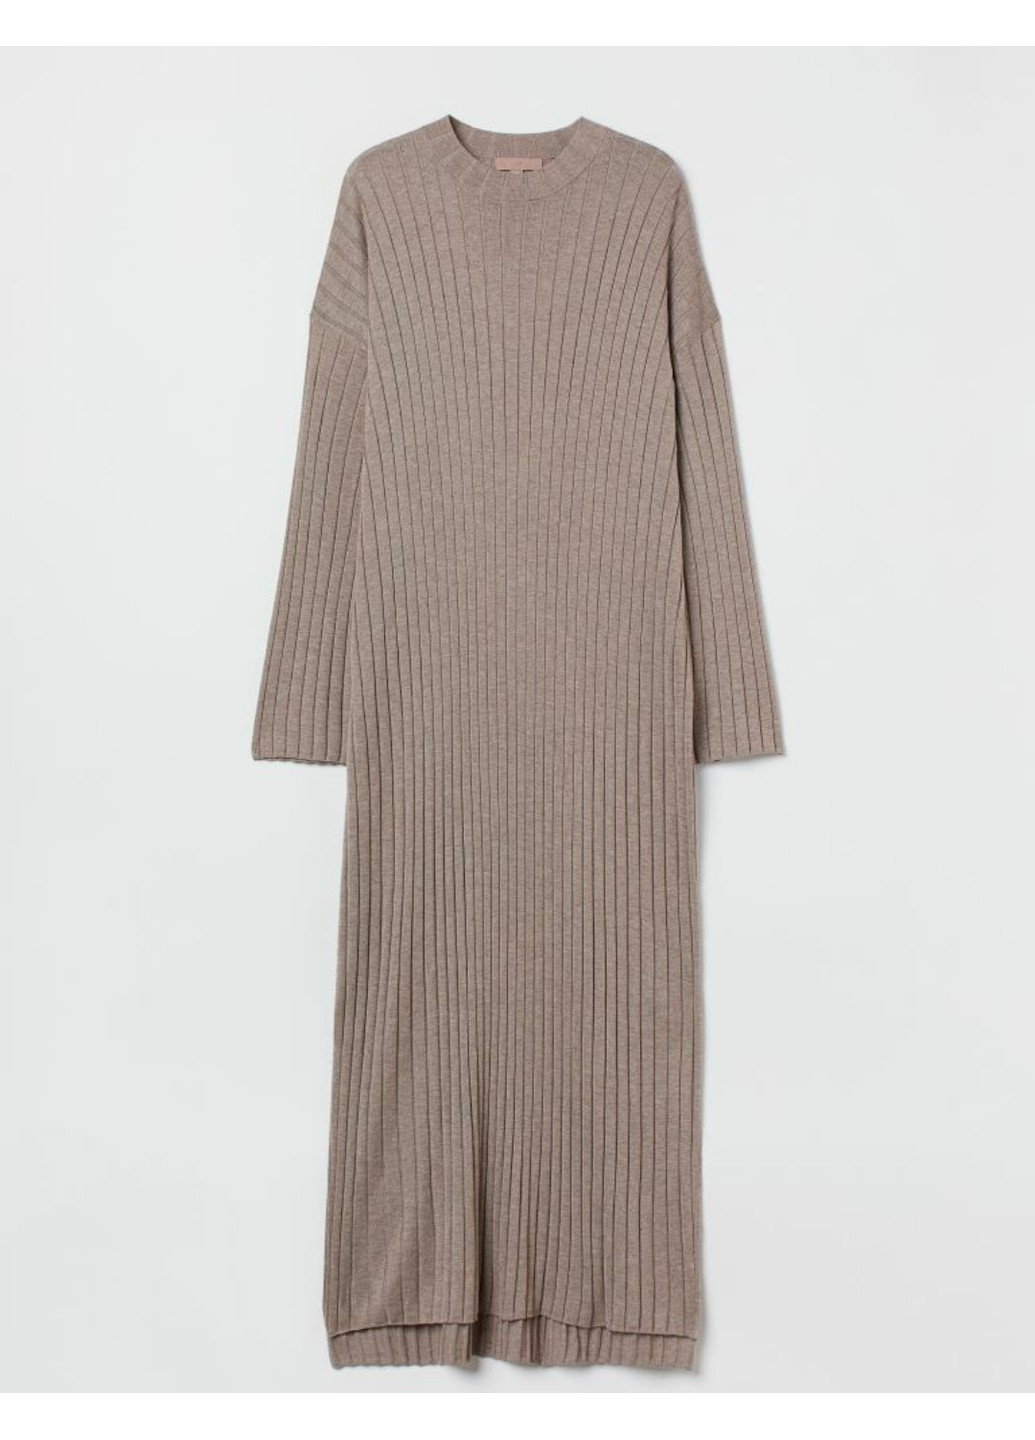 Бежевое повседневный женское трикотажное платье в рубчик н&м (56500) s бежевое H&M